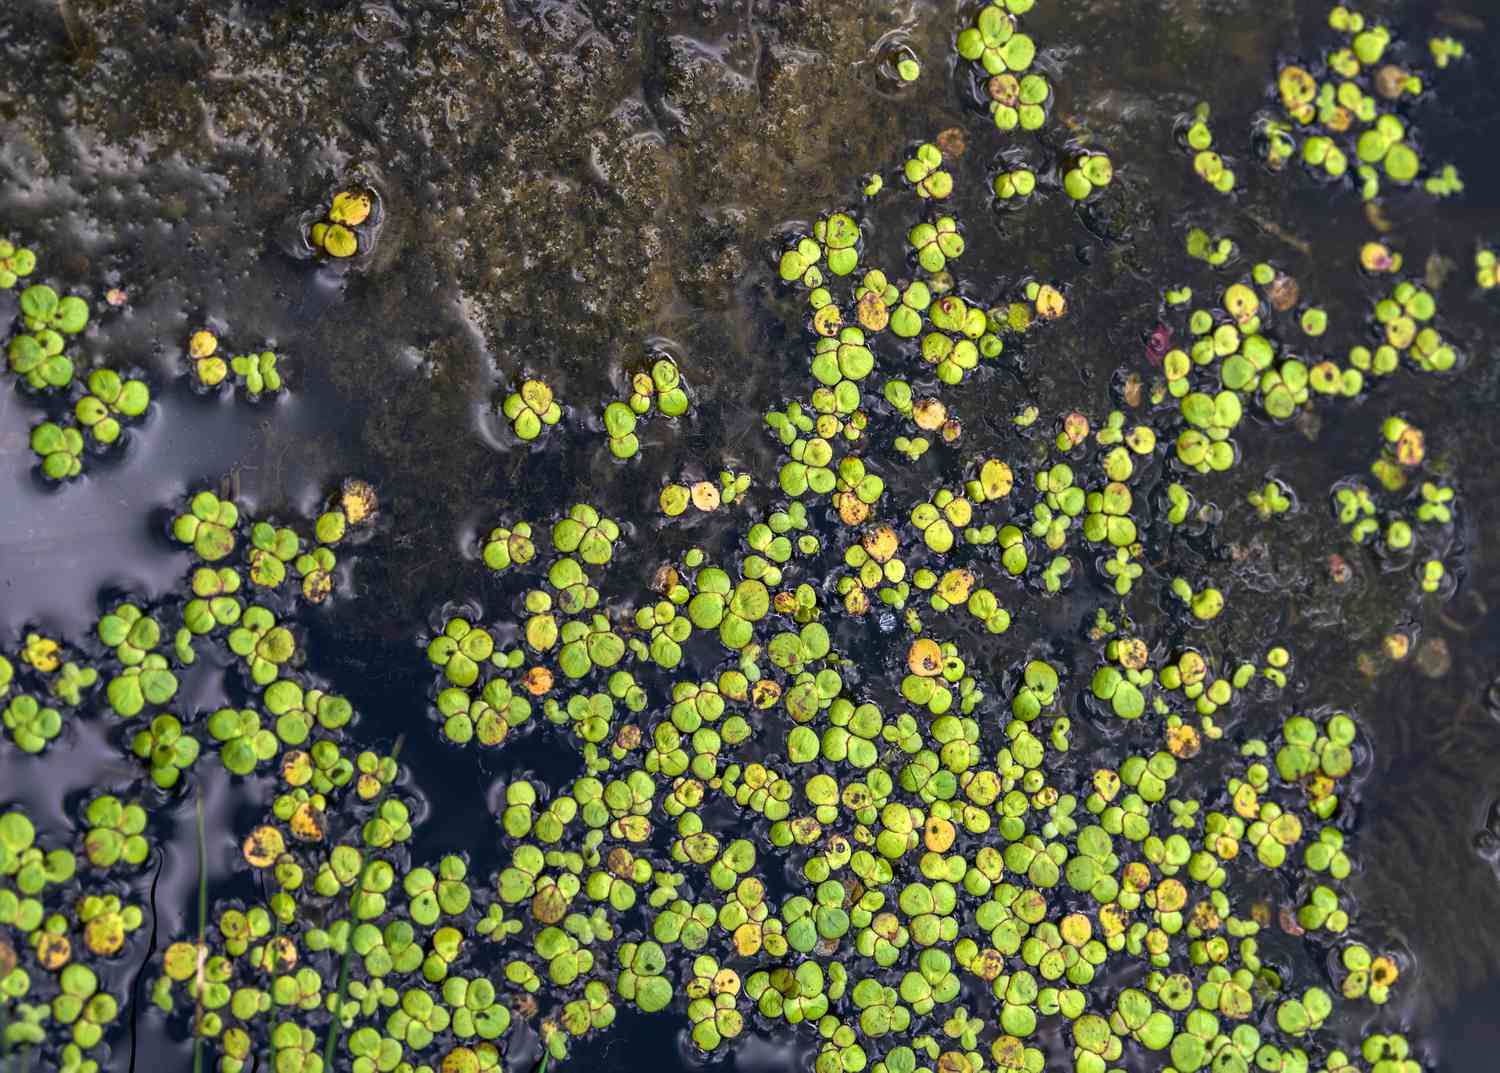 Planta lentilha d'água com pequenas folhas redondas verdes e amarelo-esverdeadas flutuando na água do lago